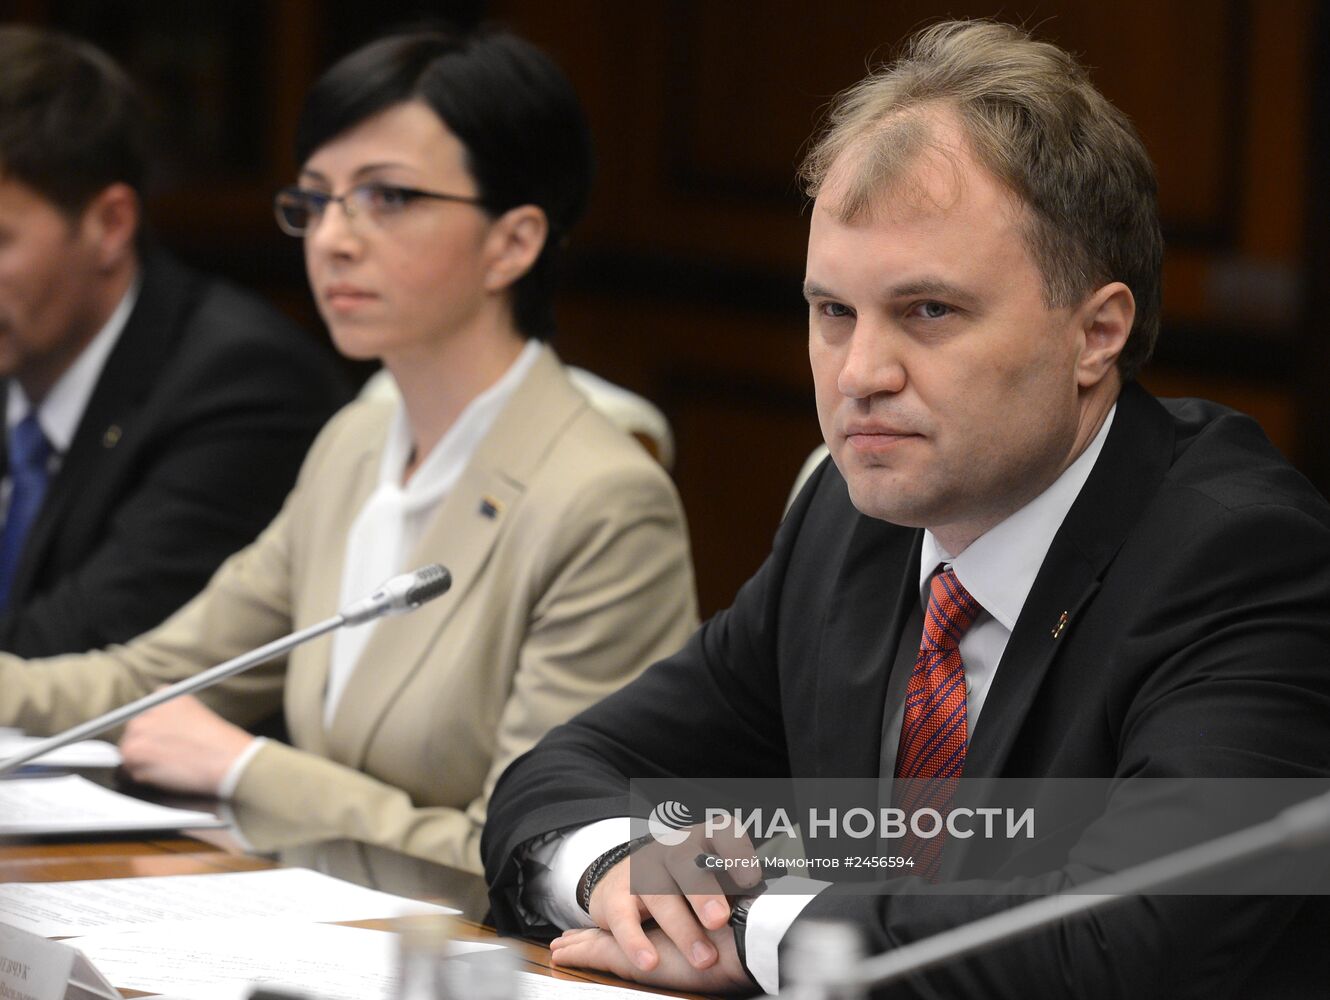 Дмитрий Рогозин и Евгений Шевчук подписали ряд двусторонних соглашений о сотрудничестве